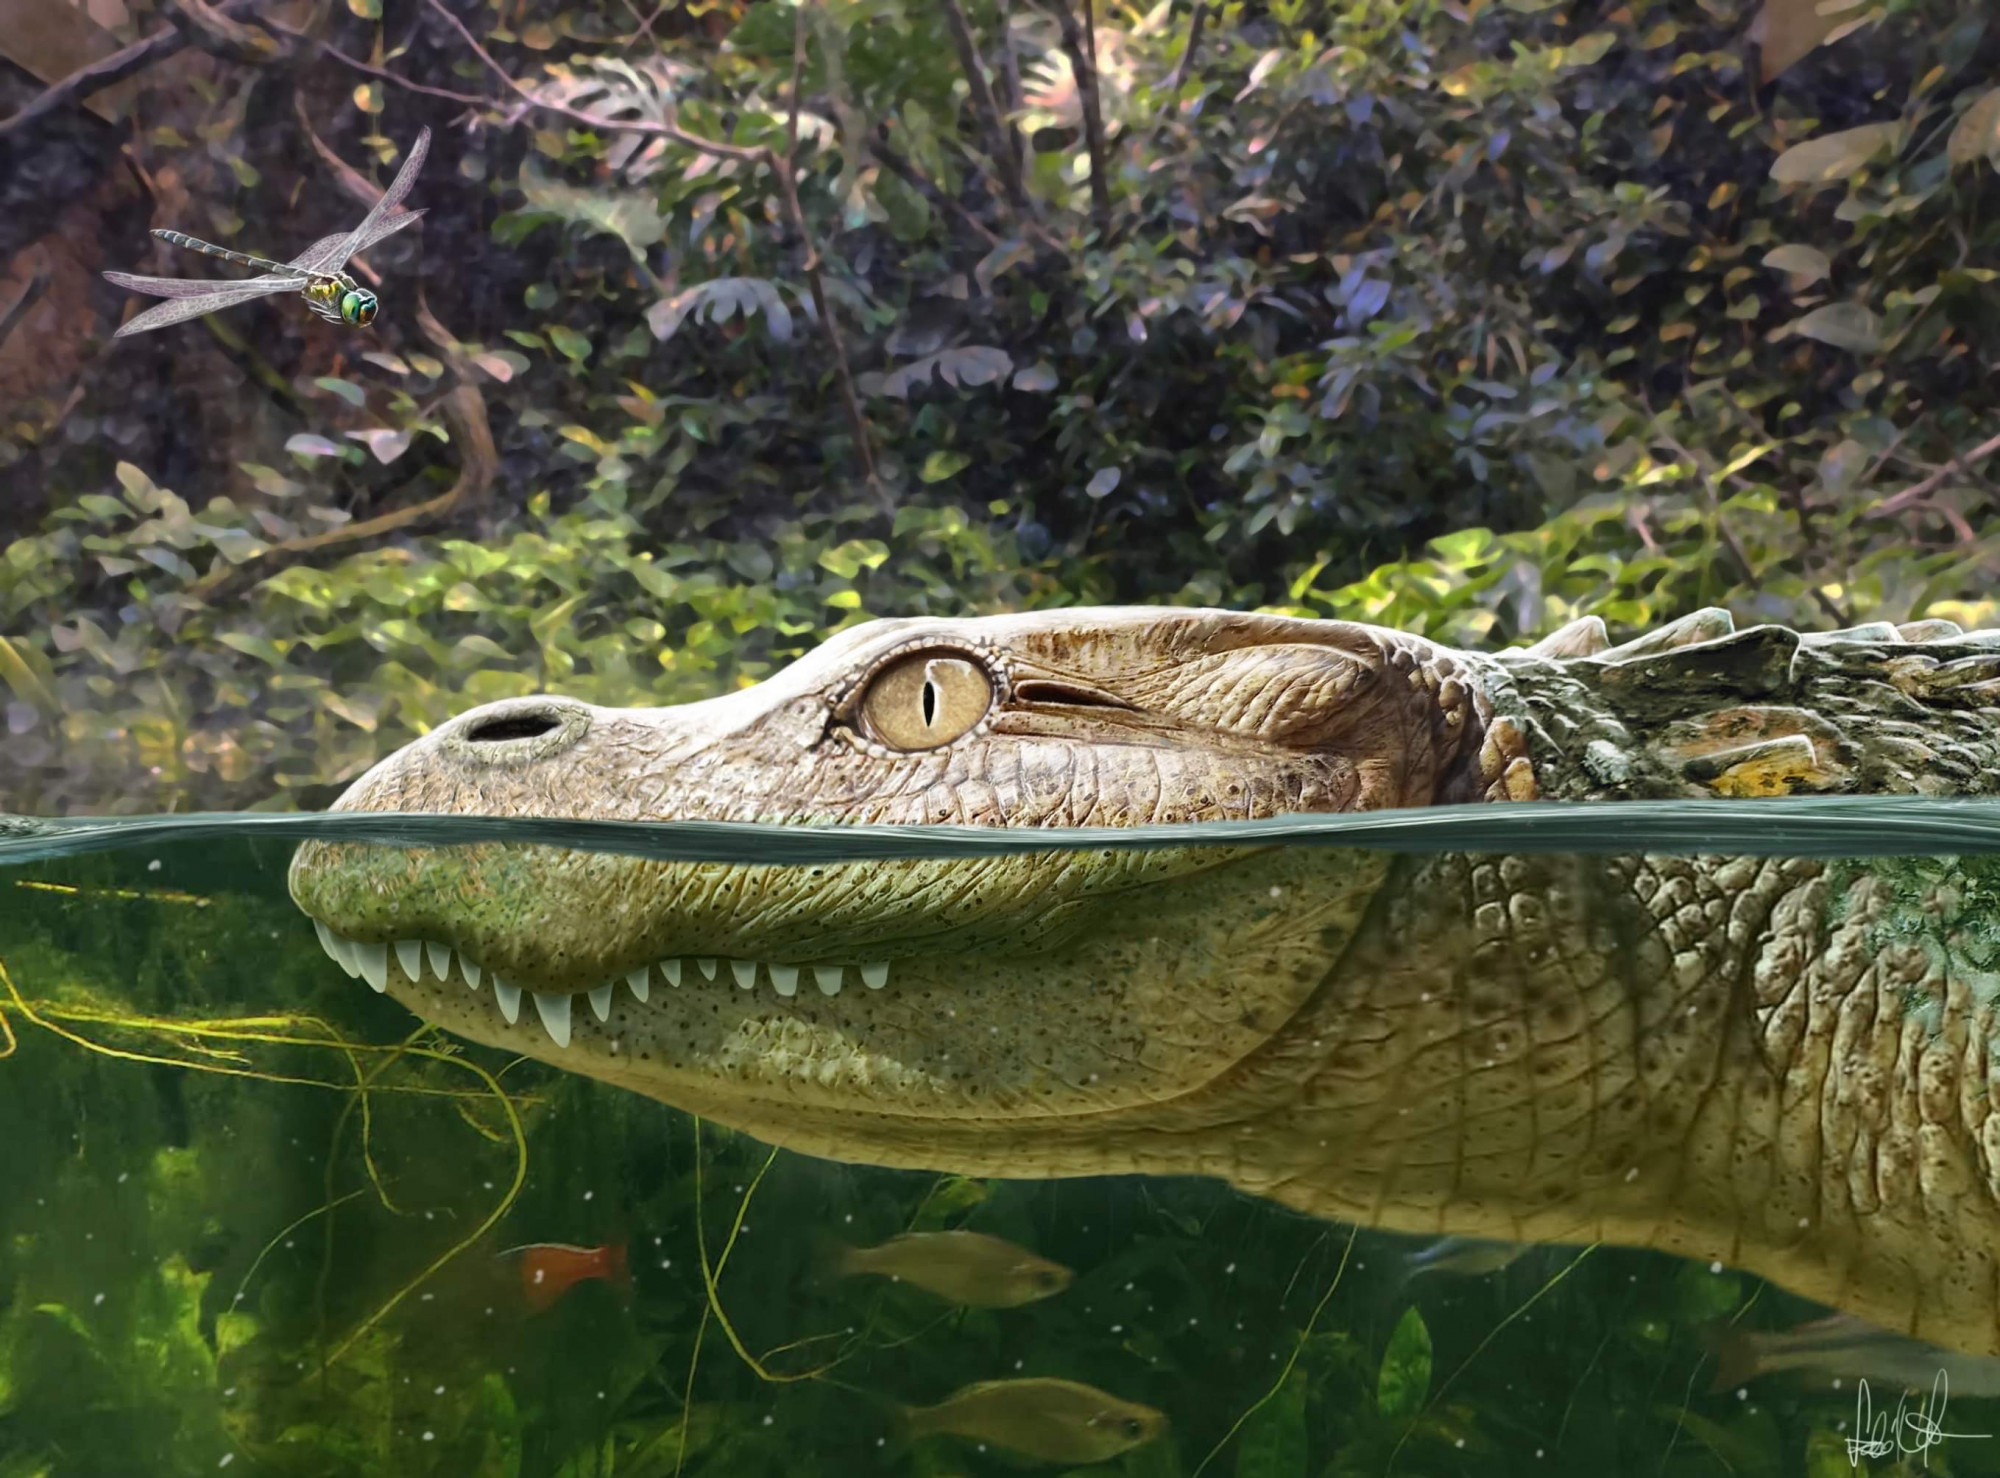 Egy magyar kutató vezetésével felfedezett faj derít fényt az aligátorok evolúciójára